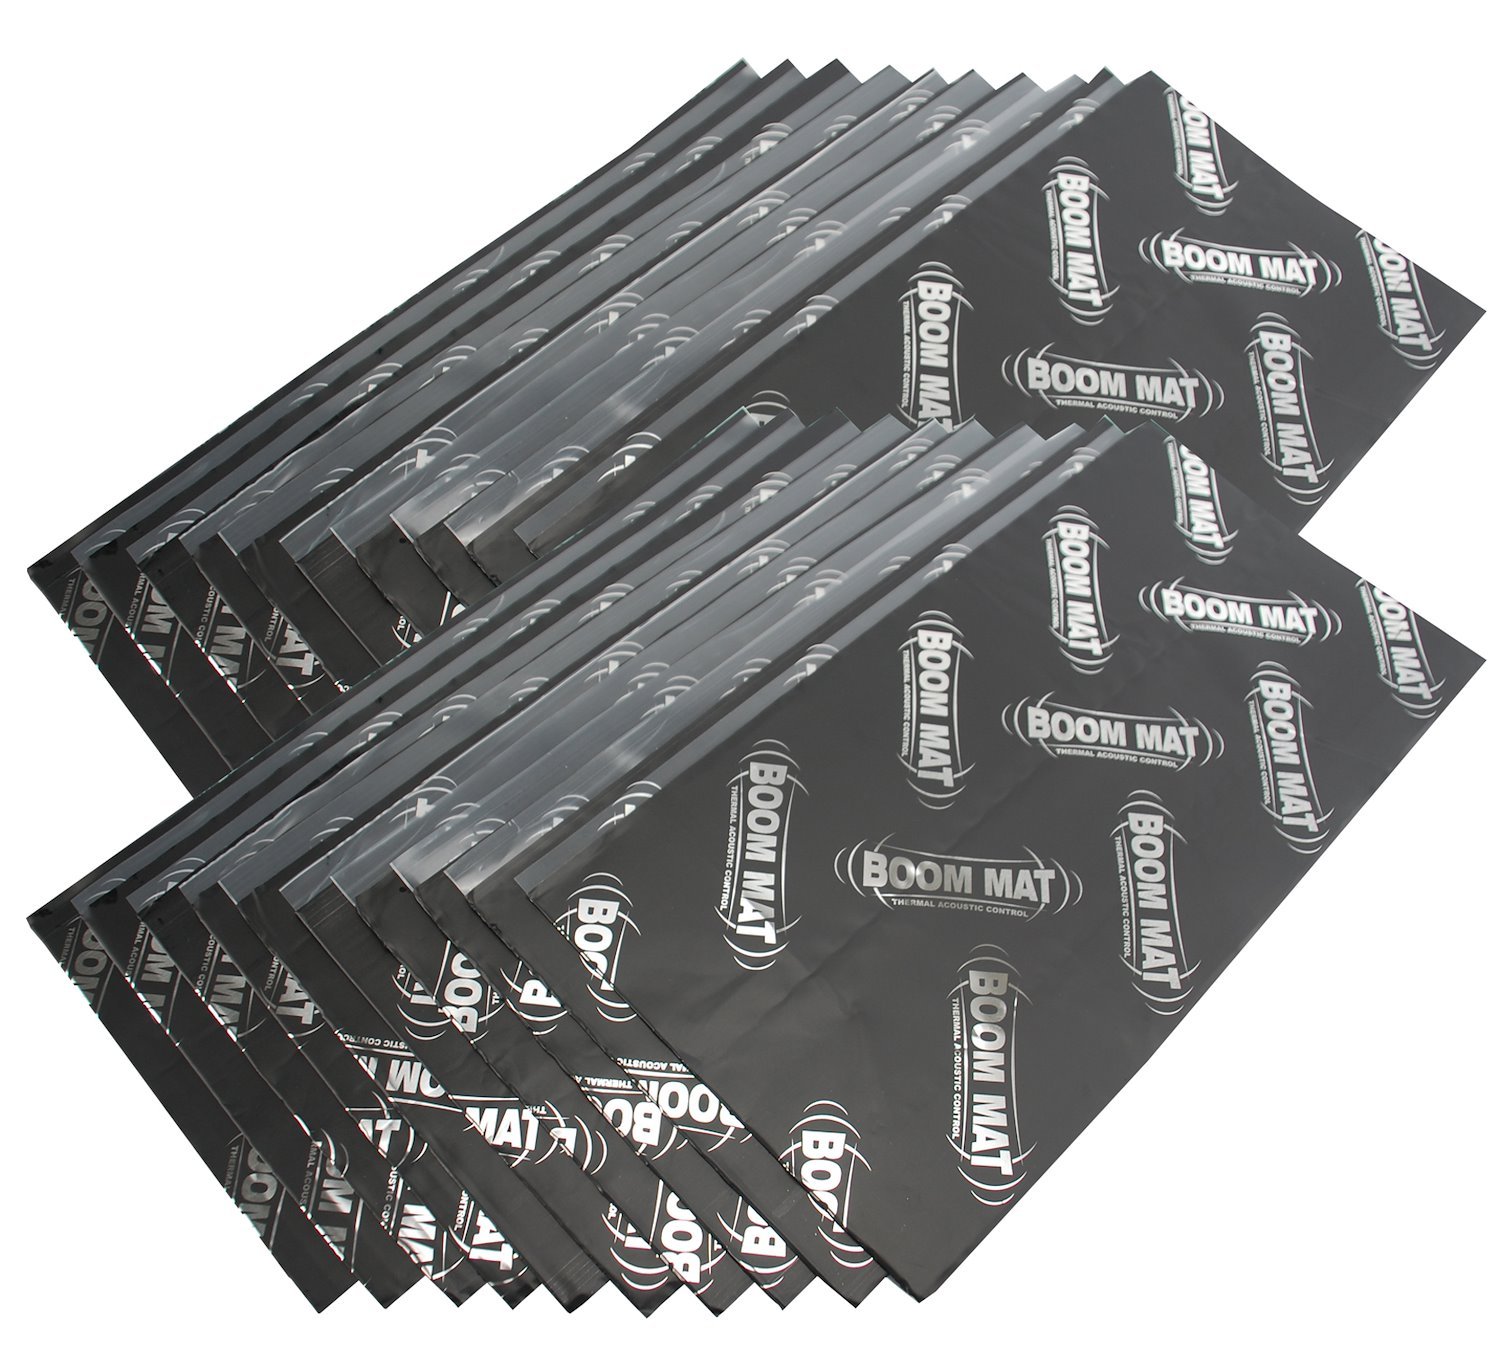 20-Pack Boom Mat Twenty 24" x 12.5" Sheets (41.7 sq/ft)